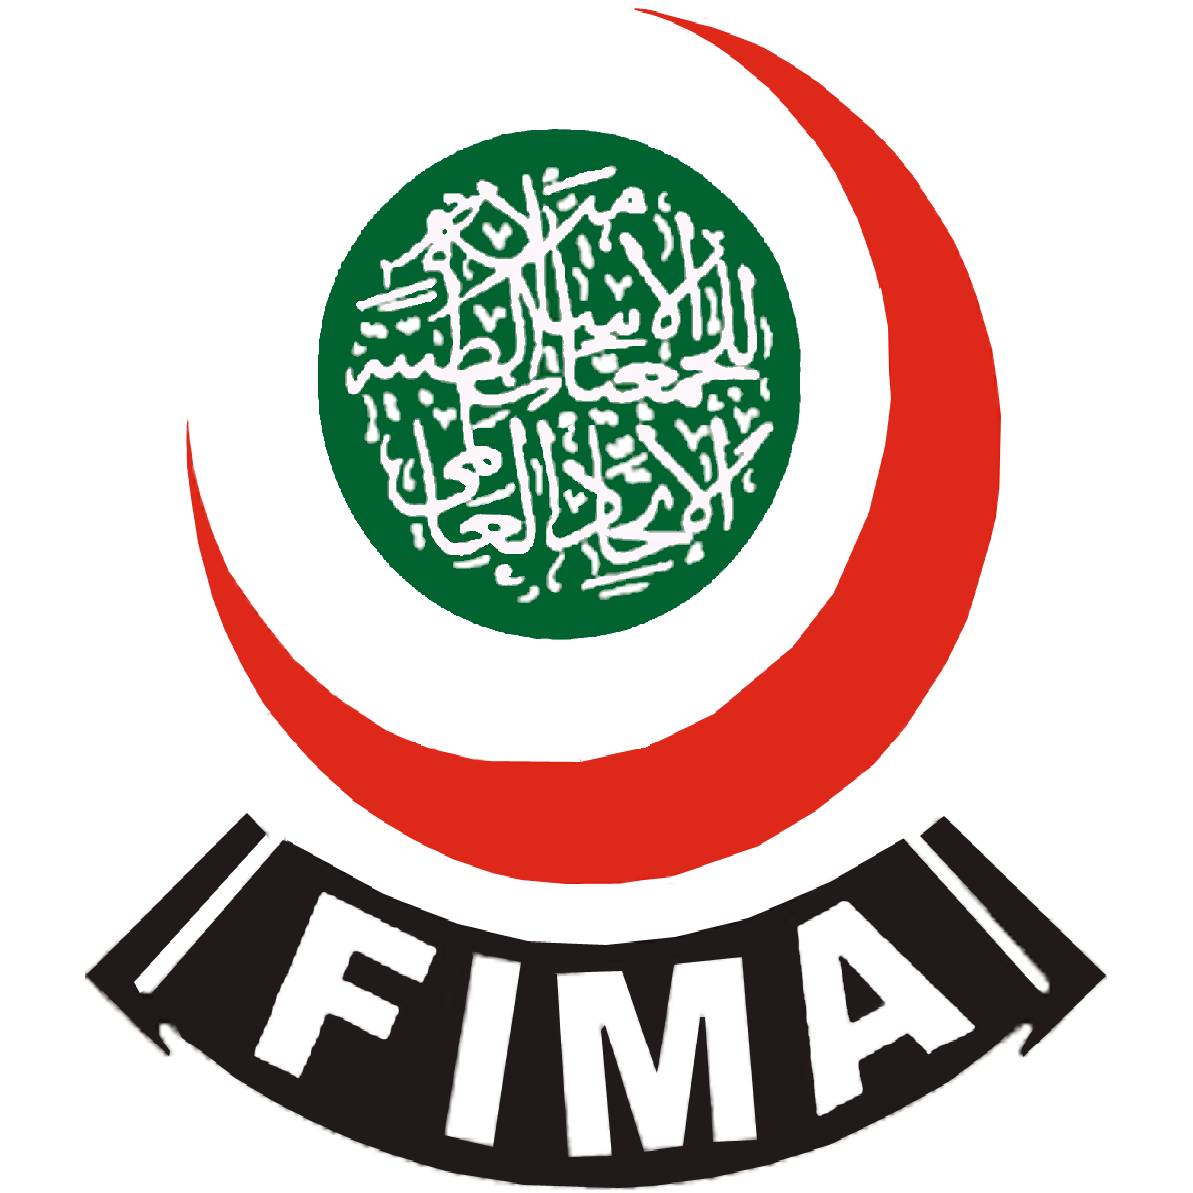 Muslim Health Charity Organization in USA - Federation of Islamic Medical Associations